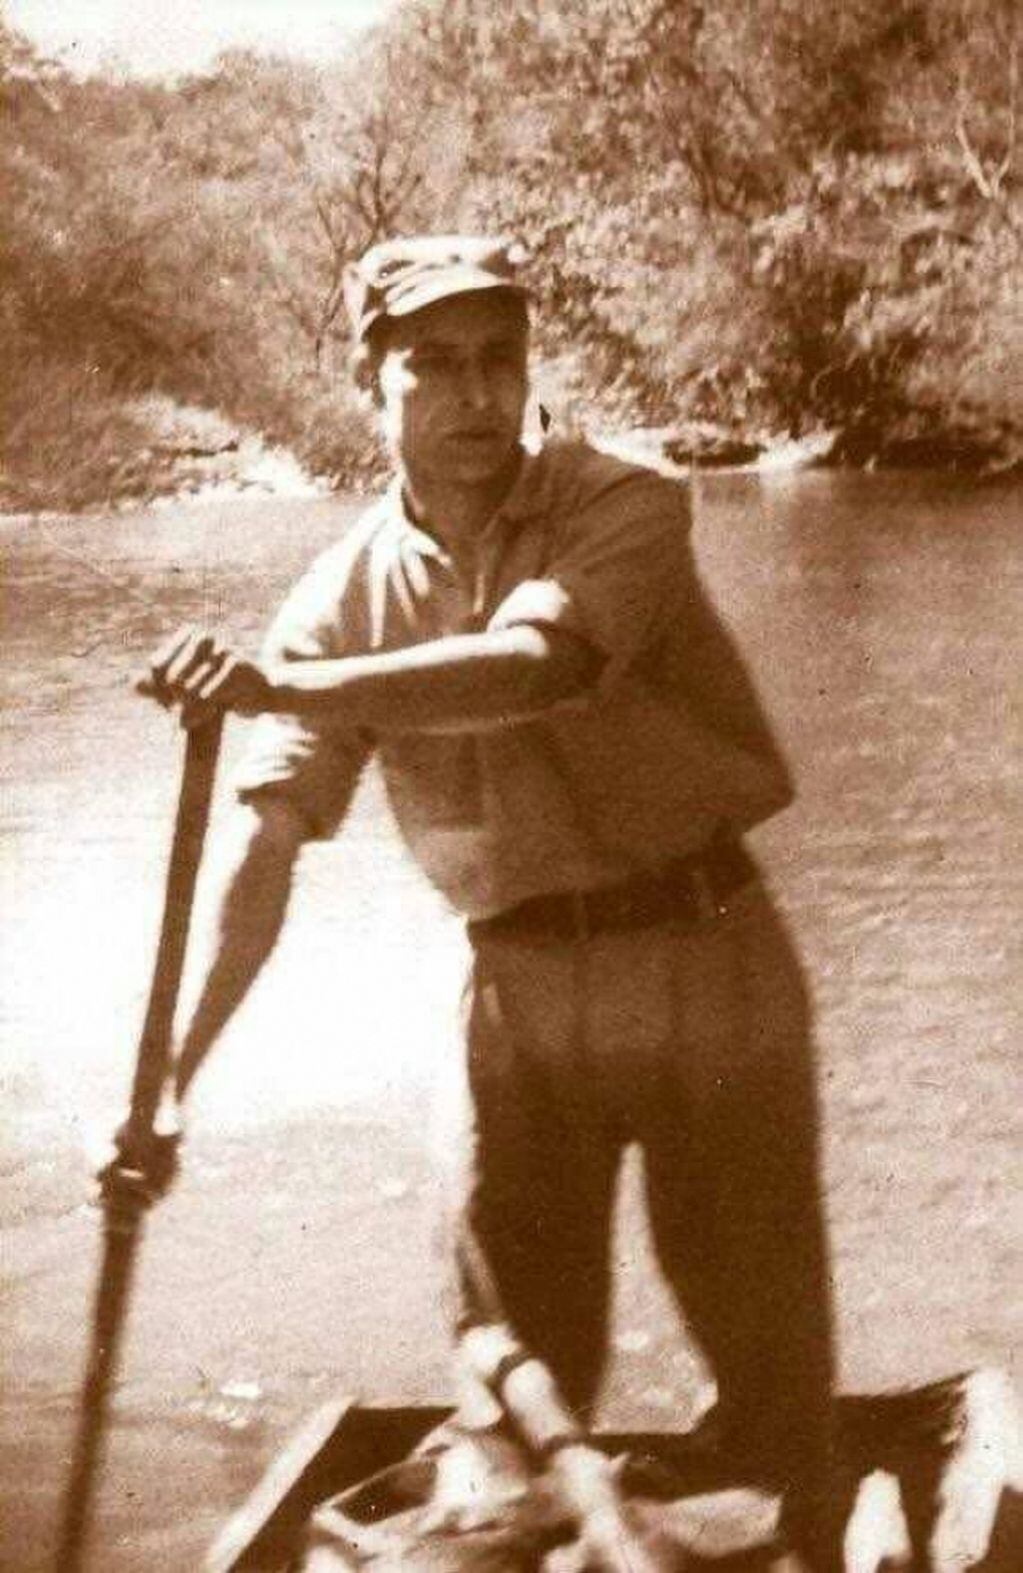 Méndez, guardaparque del Parque Nacional Iguazú. En 1968 perdió la vida mientras cumplía con su deber enfrentando a cazadores furtivos que ponían en riesgo la conservación de la fauna del Parque.